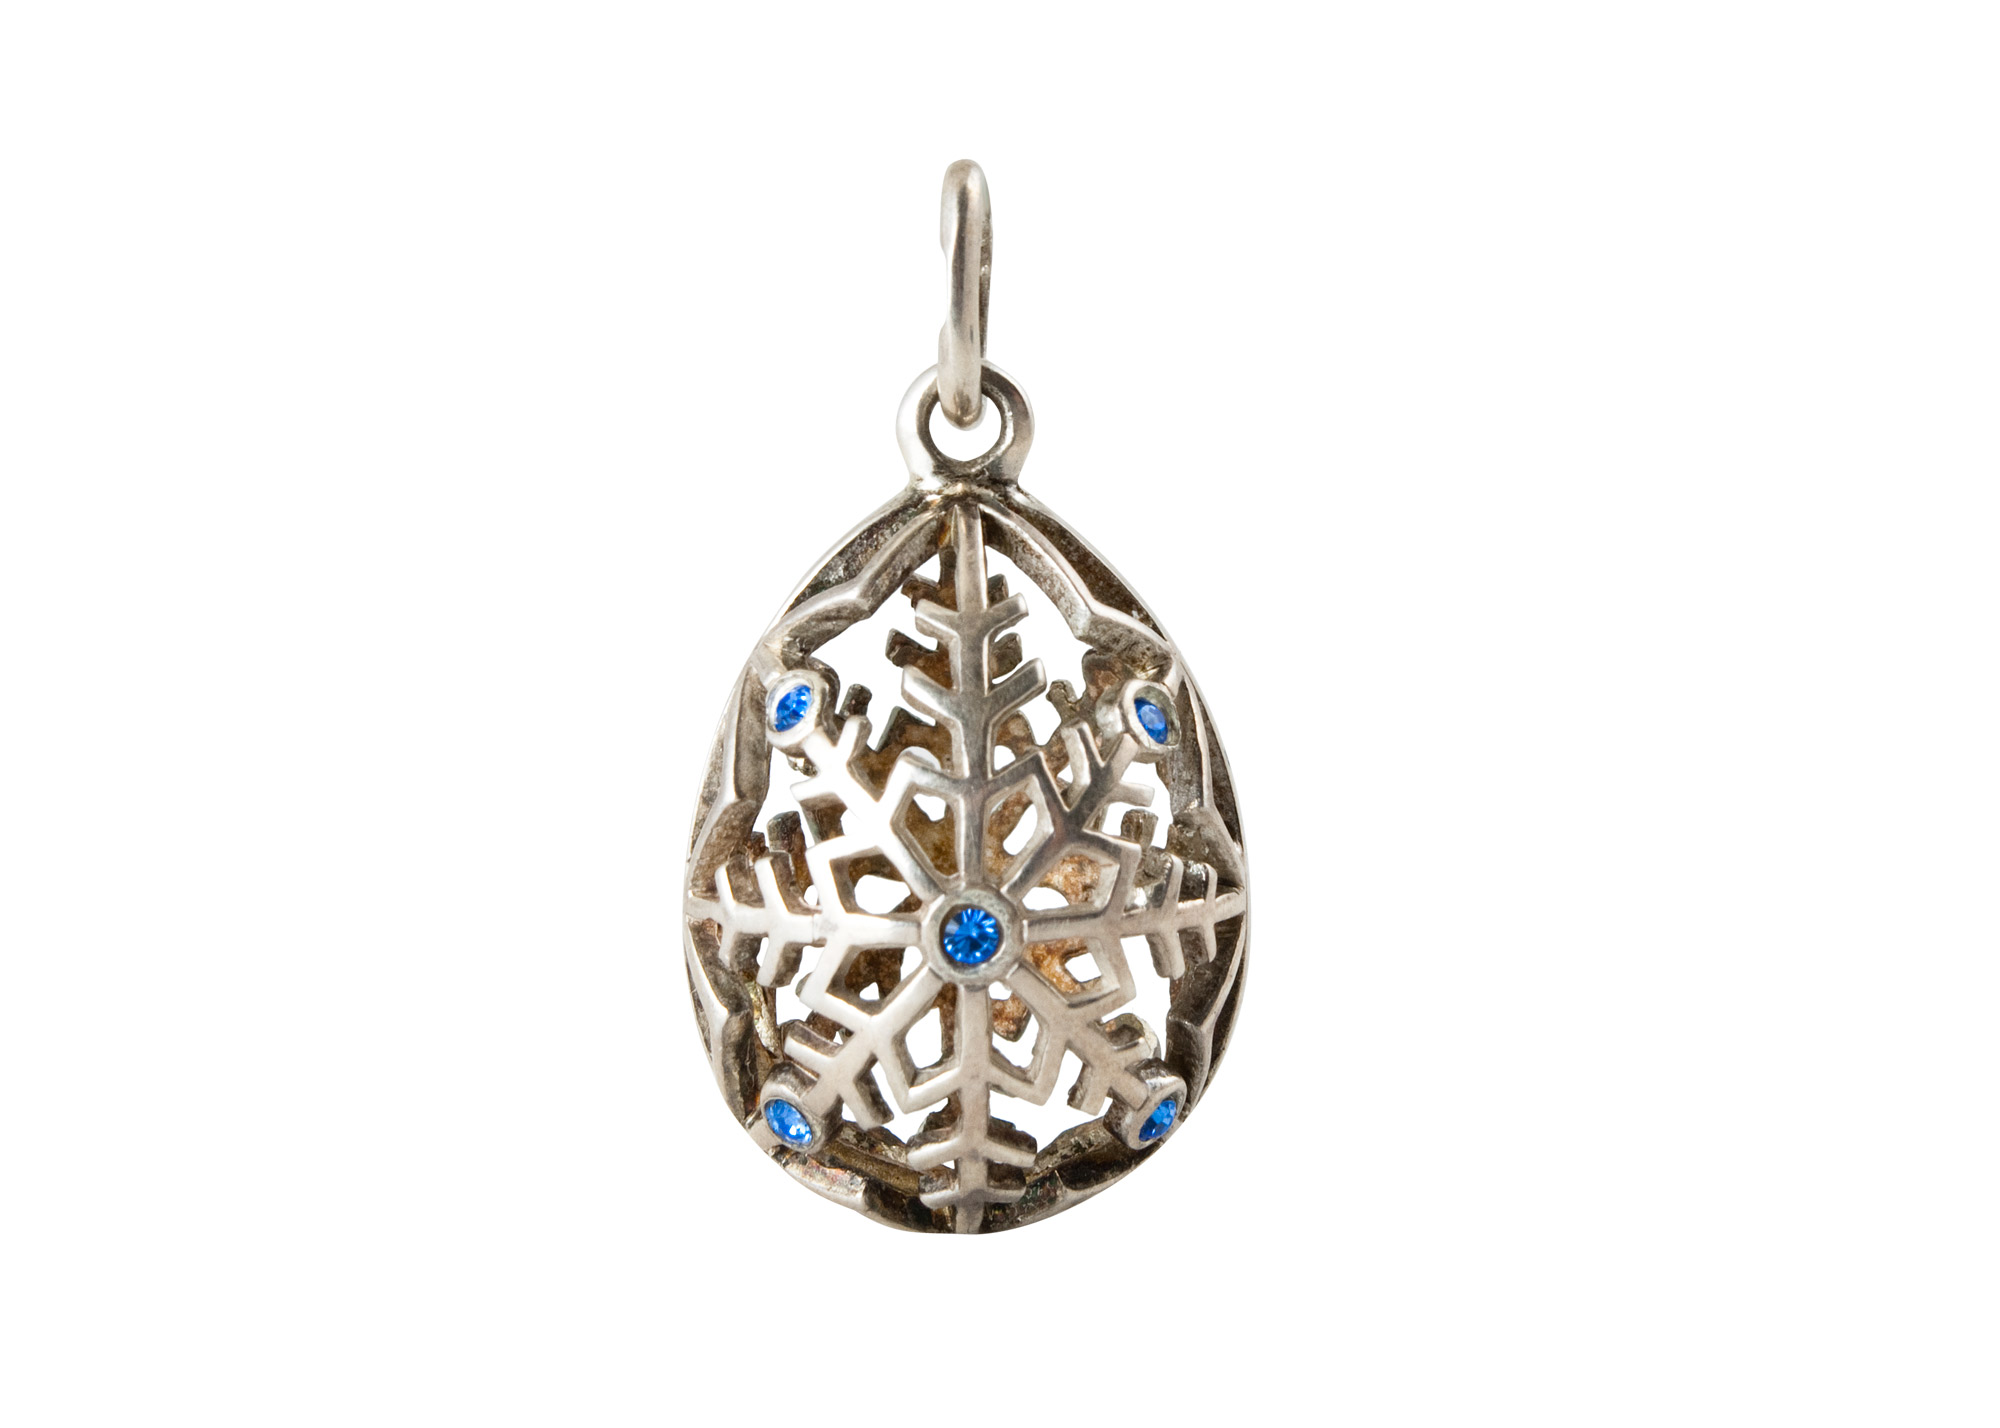 Buy Silver Snowflake Pendant w/ BLUE CRYSTALS at GoldenCockerel.com